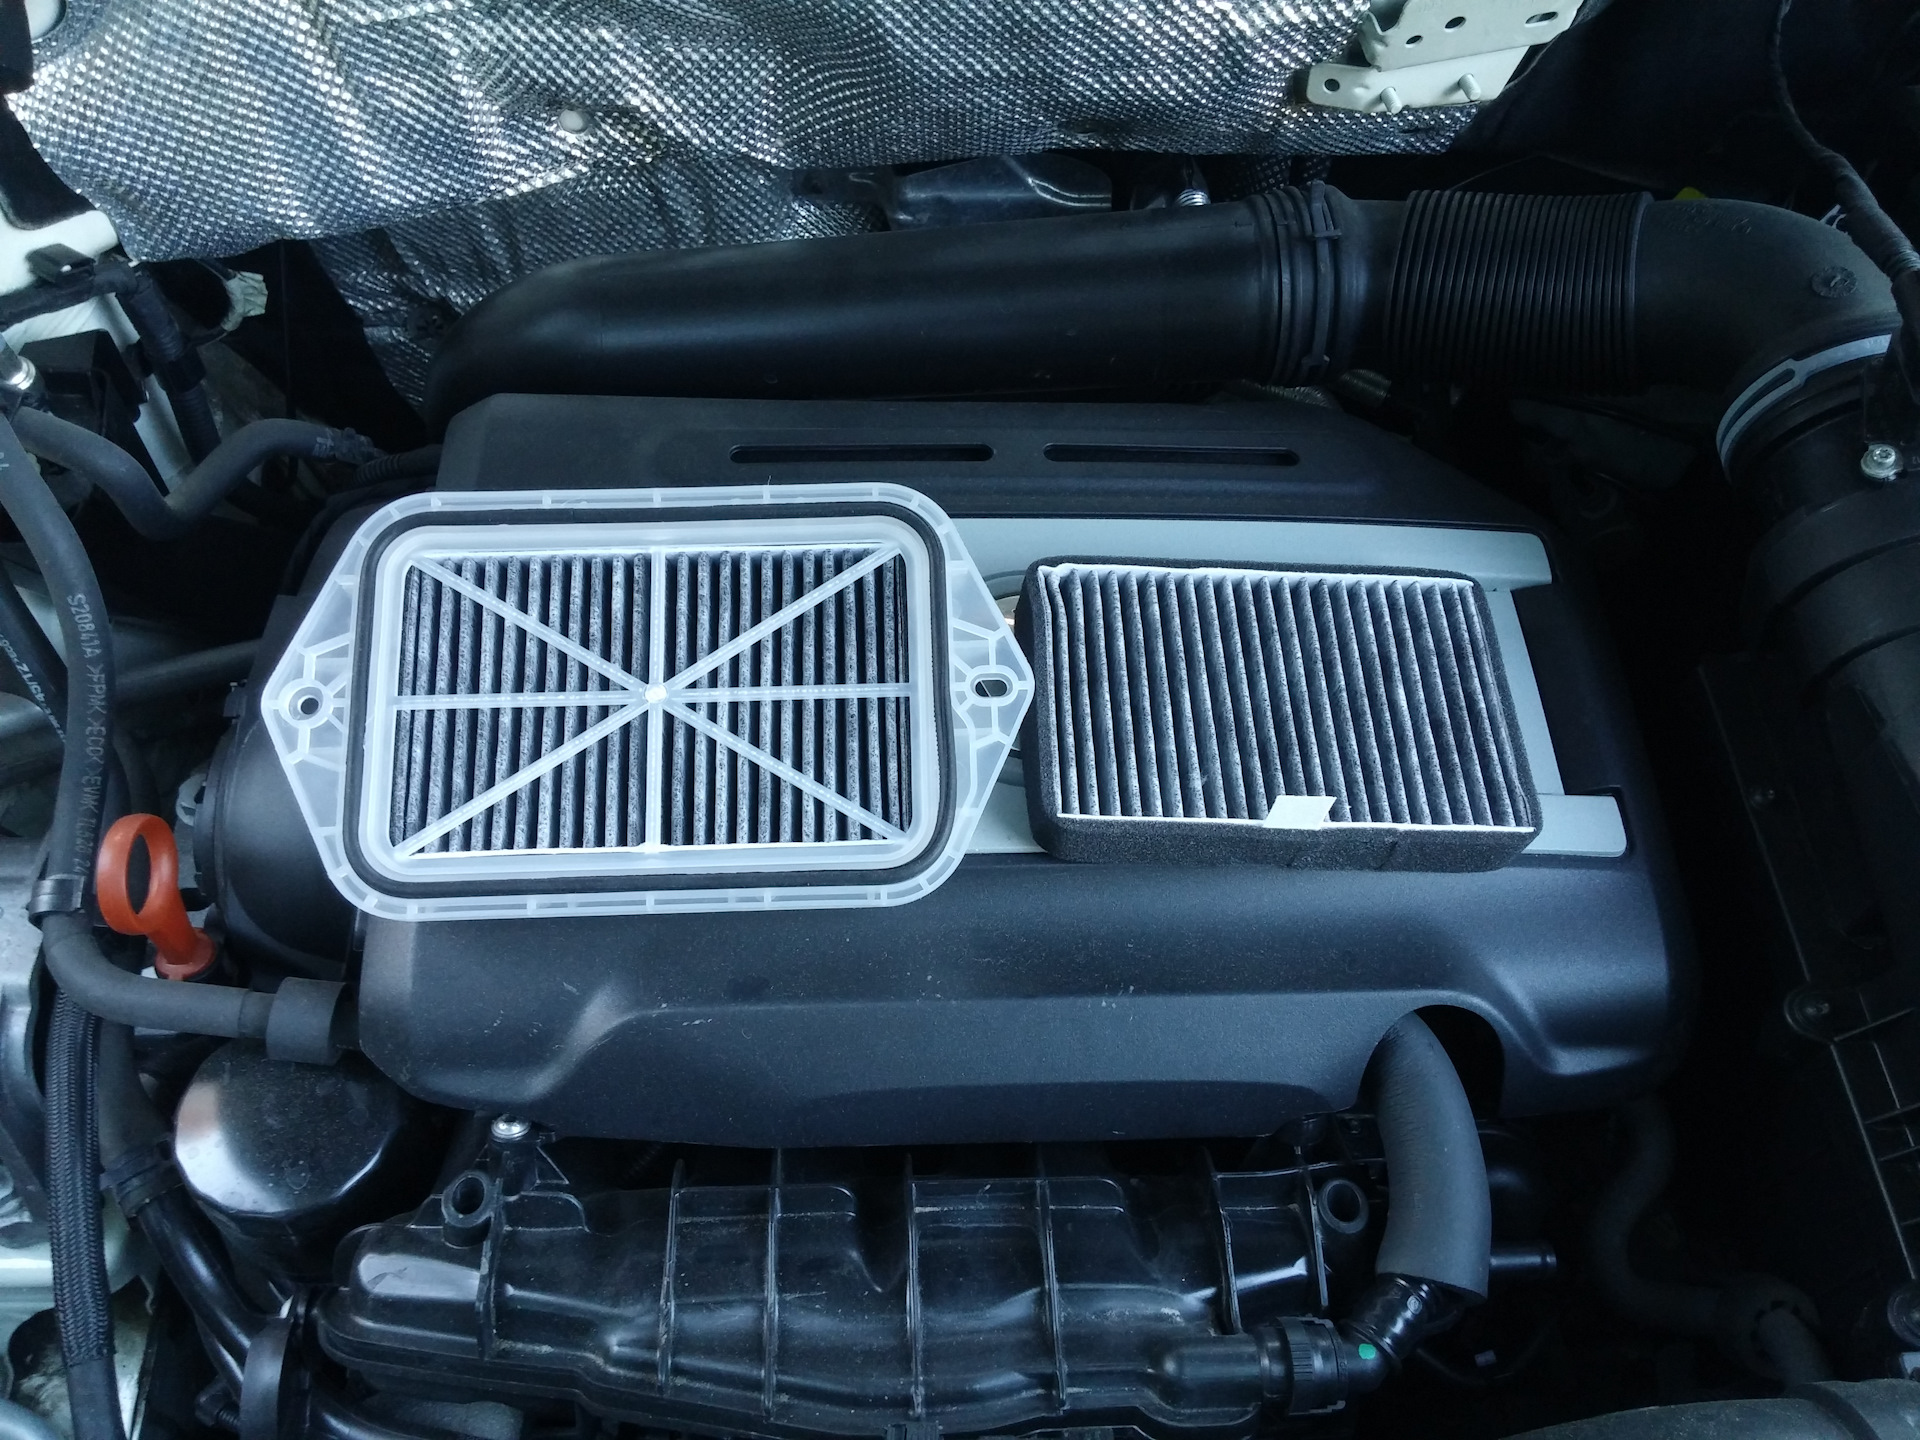 Воздушный фильтр тигуан 2.0. Воздушный фильтр Тигуан 1.4. Volkswagen Tiguan 2015 воздушный фильтр. Tiguan дополнительный фильтр воздуха. Фильтр воздушный Тигуан 2.0.